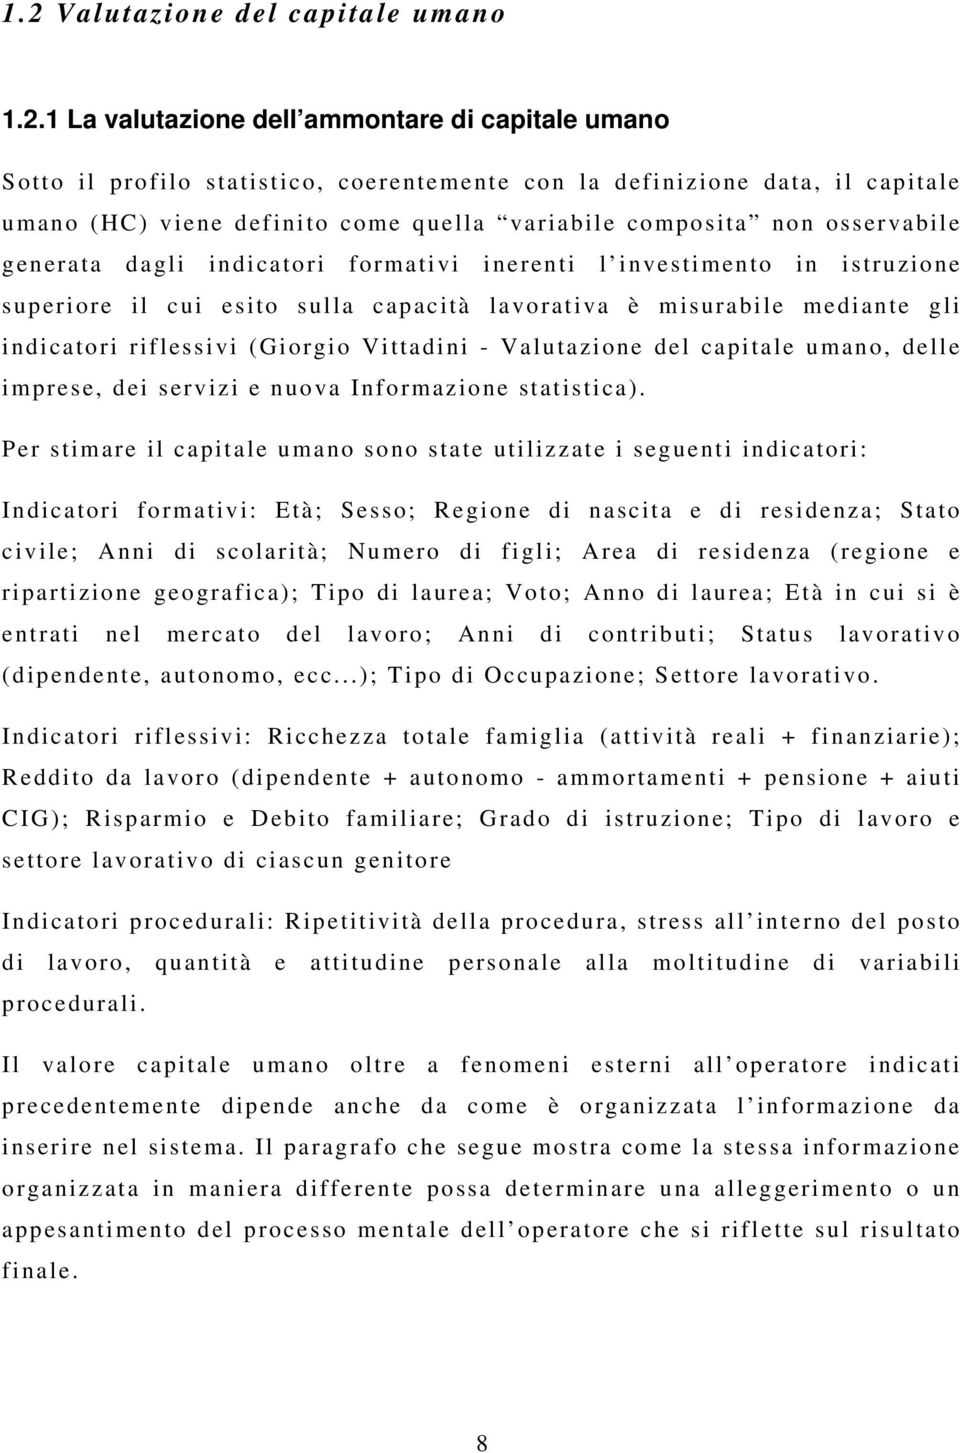 indicatori riflessivi (Giorgio Vittadini - Valutazione del capitale umano, delle imprese, dei servizi e nuova Informazione statistica).